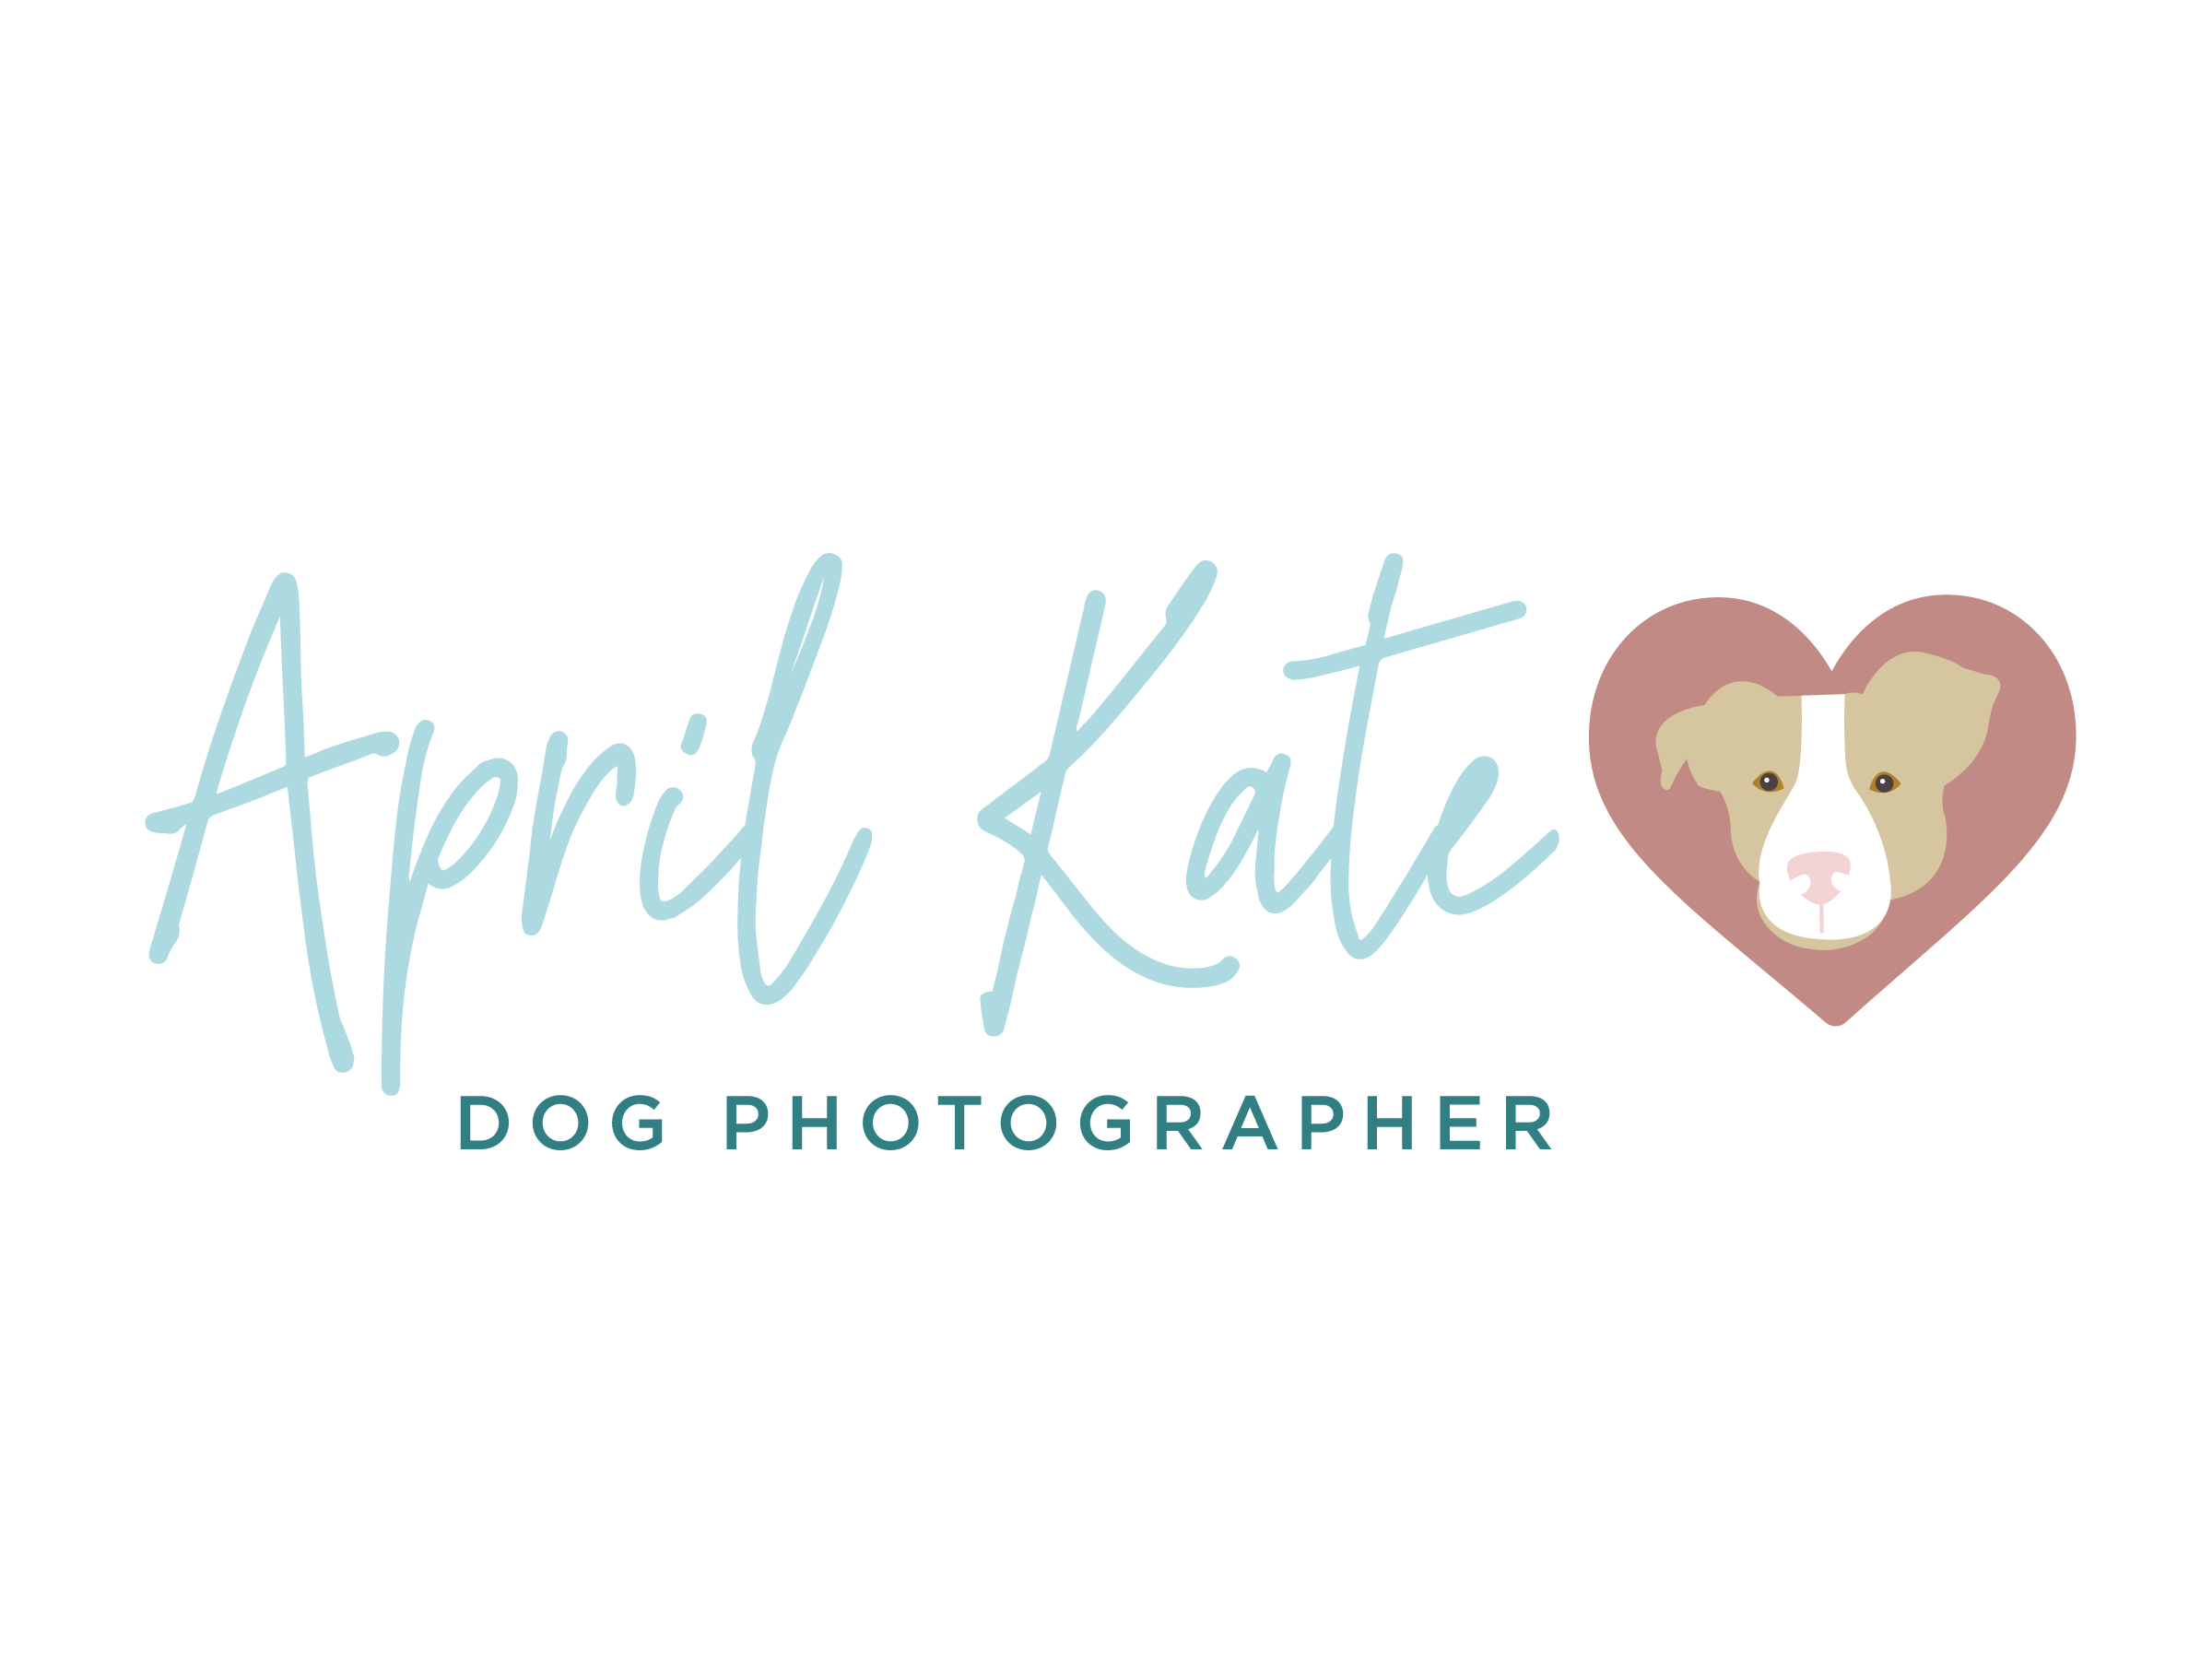 APRIL KATE DOG PHOTOGRAPHER